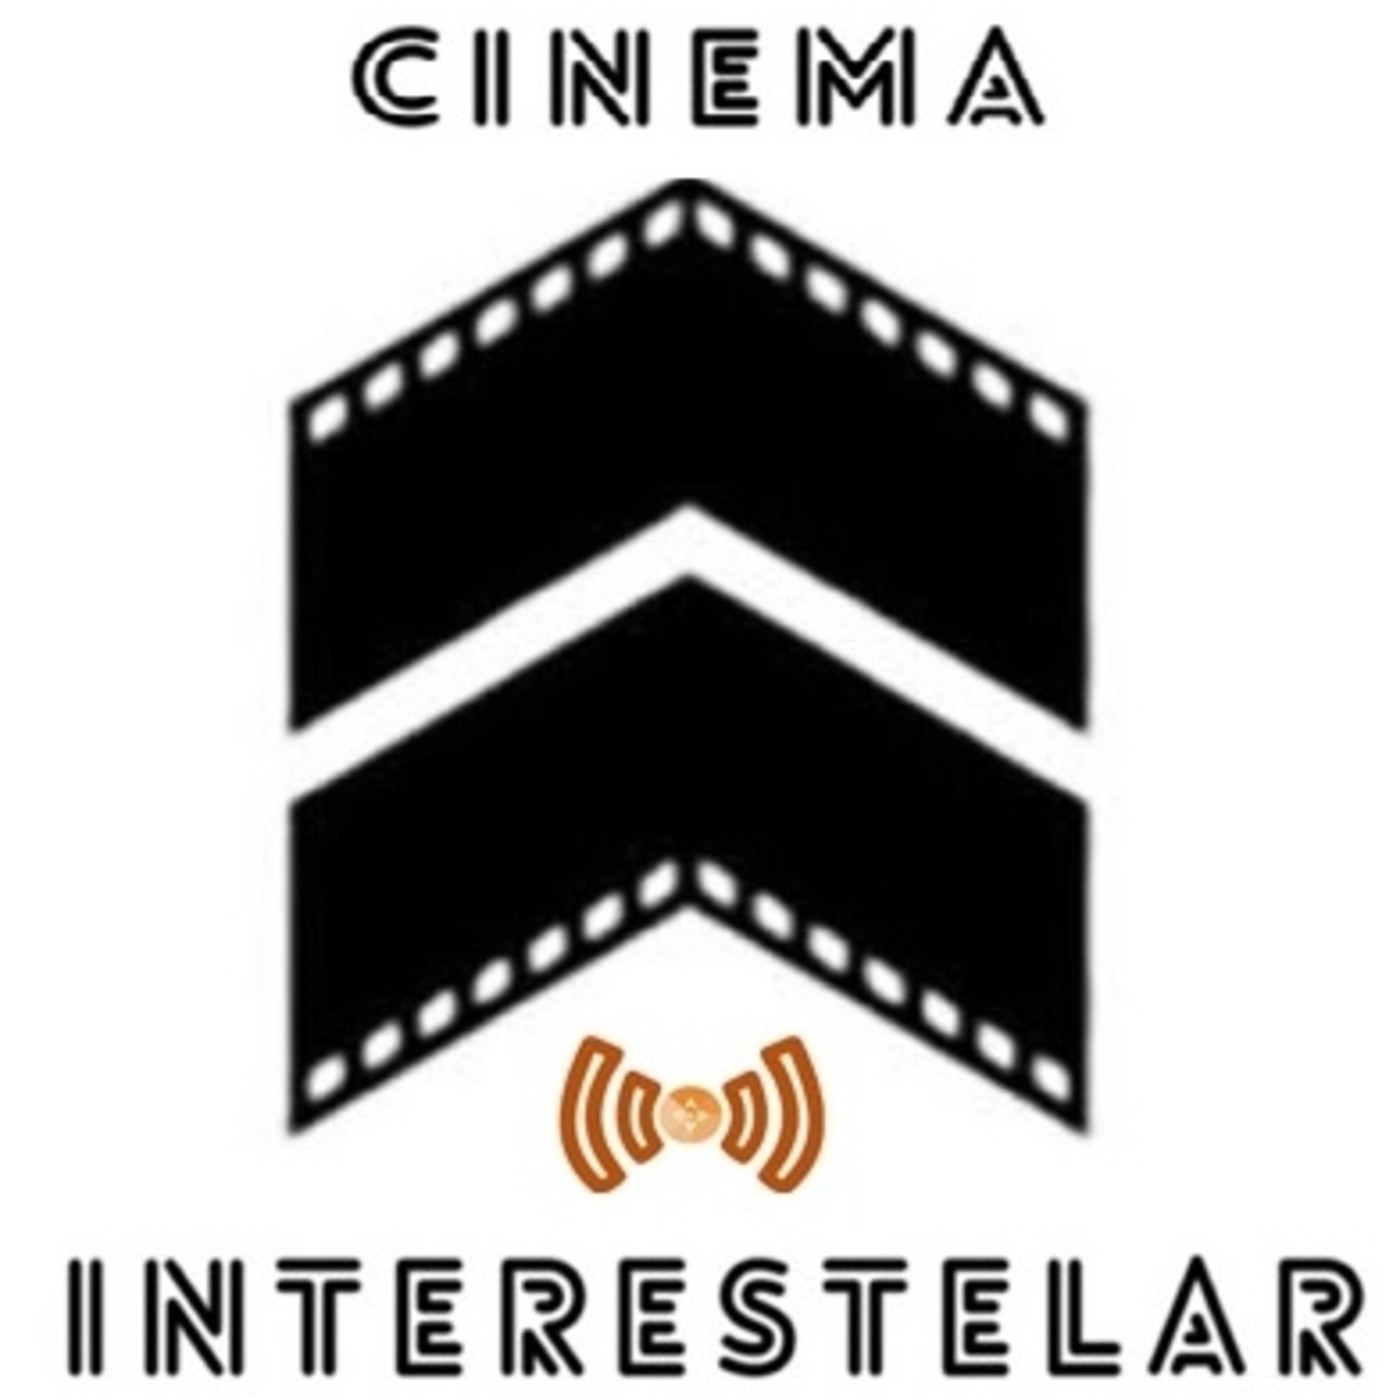 Cinema interestelar